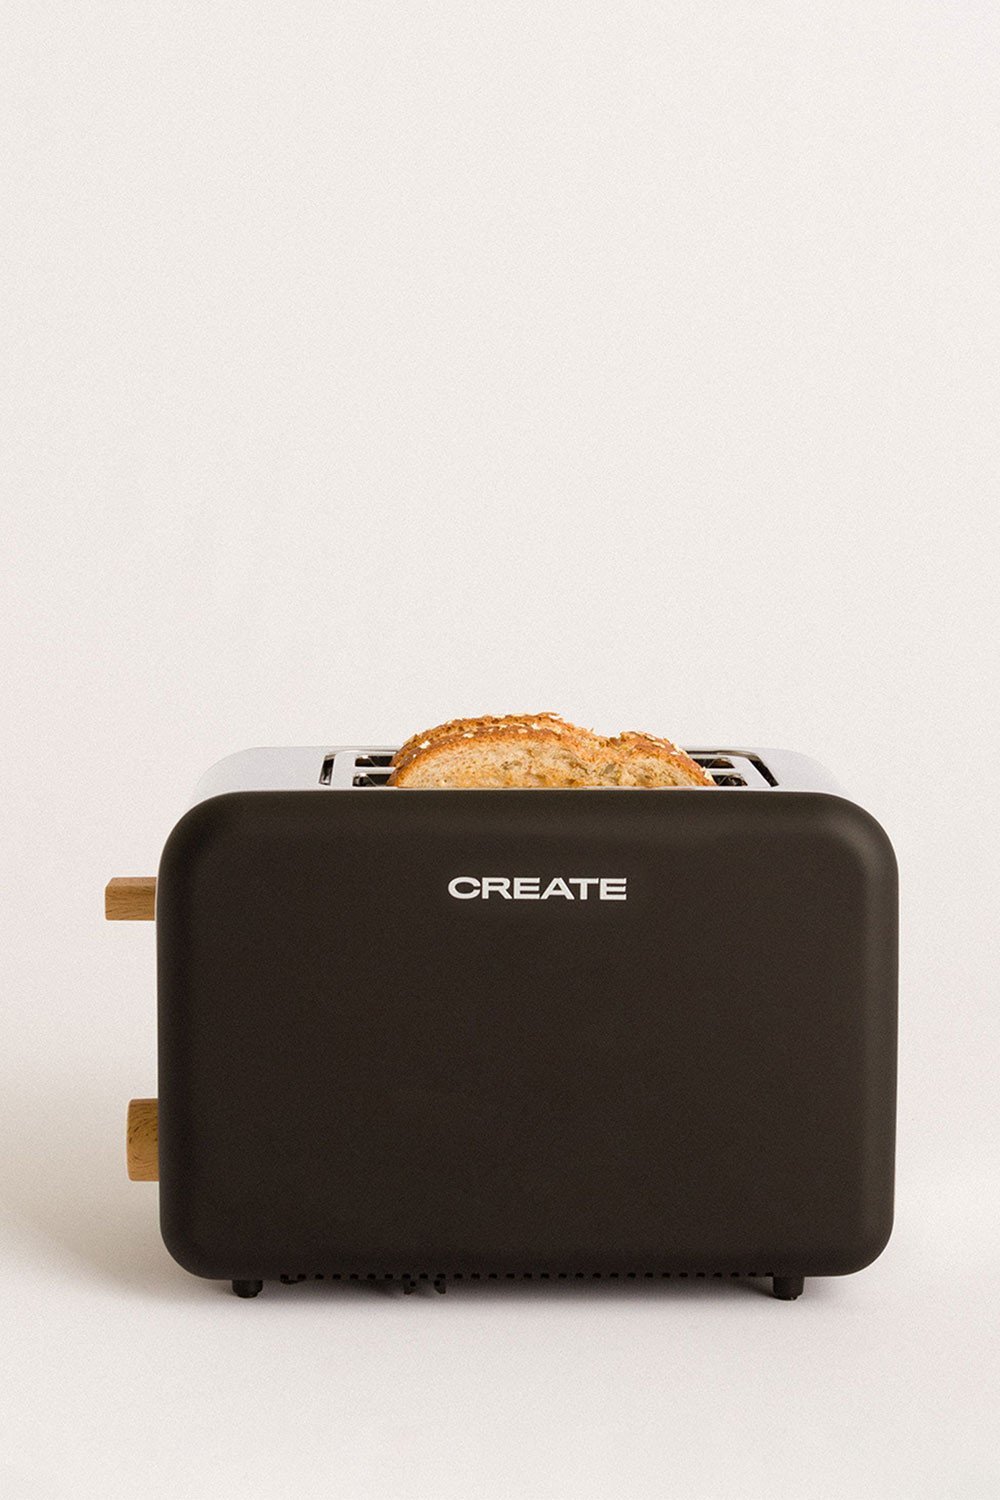 CREATE - TOAST - Grille-pain pour tranches larges, image de la galerie 1